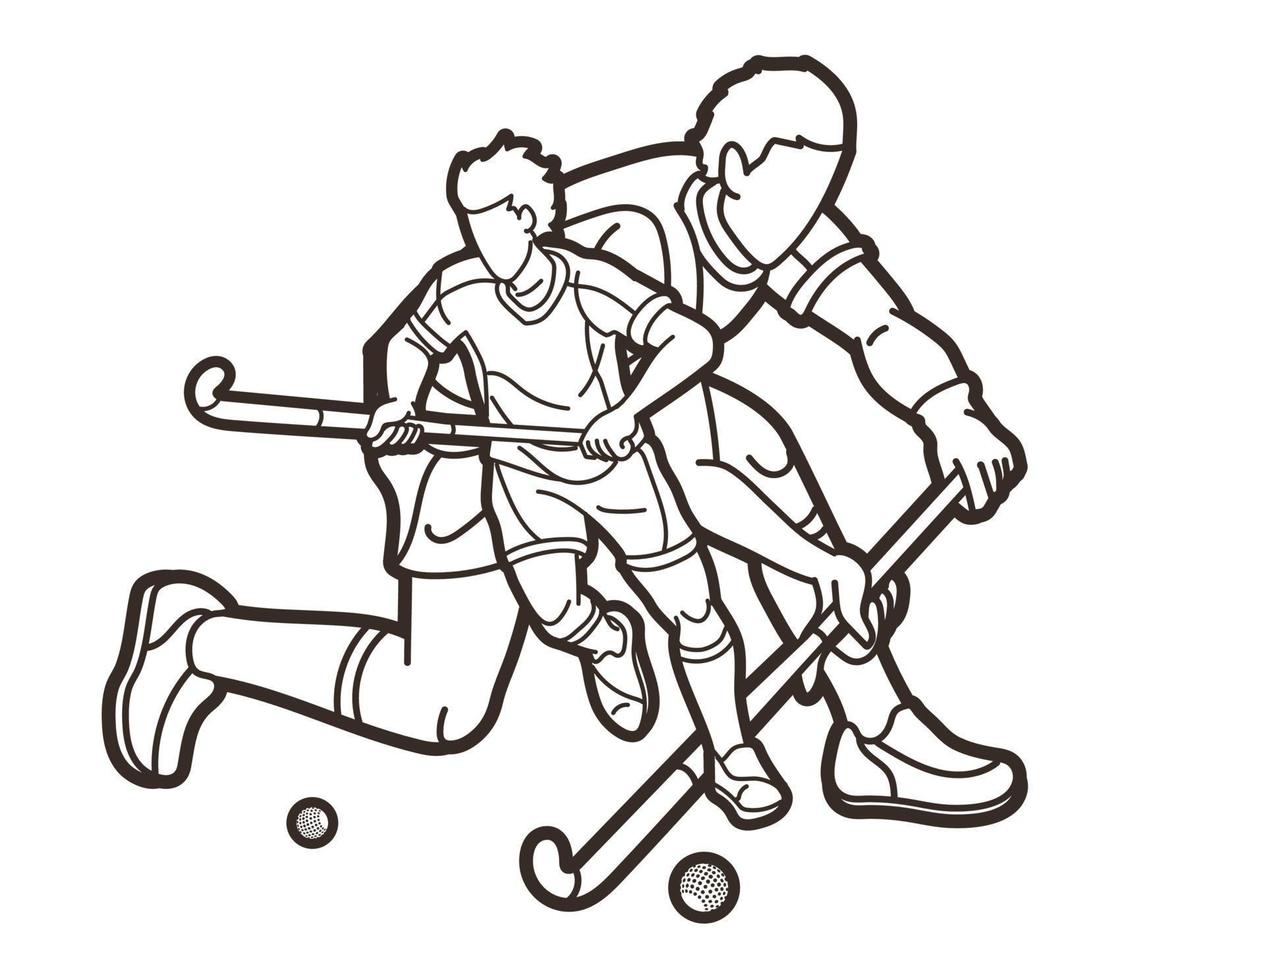 översikt fält hockey sport team manlig spelare blanda verkan vektor